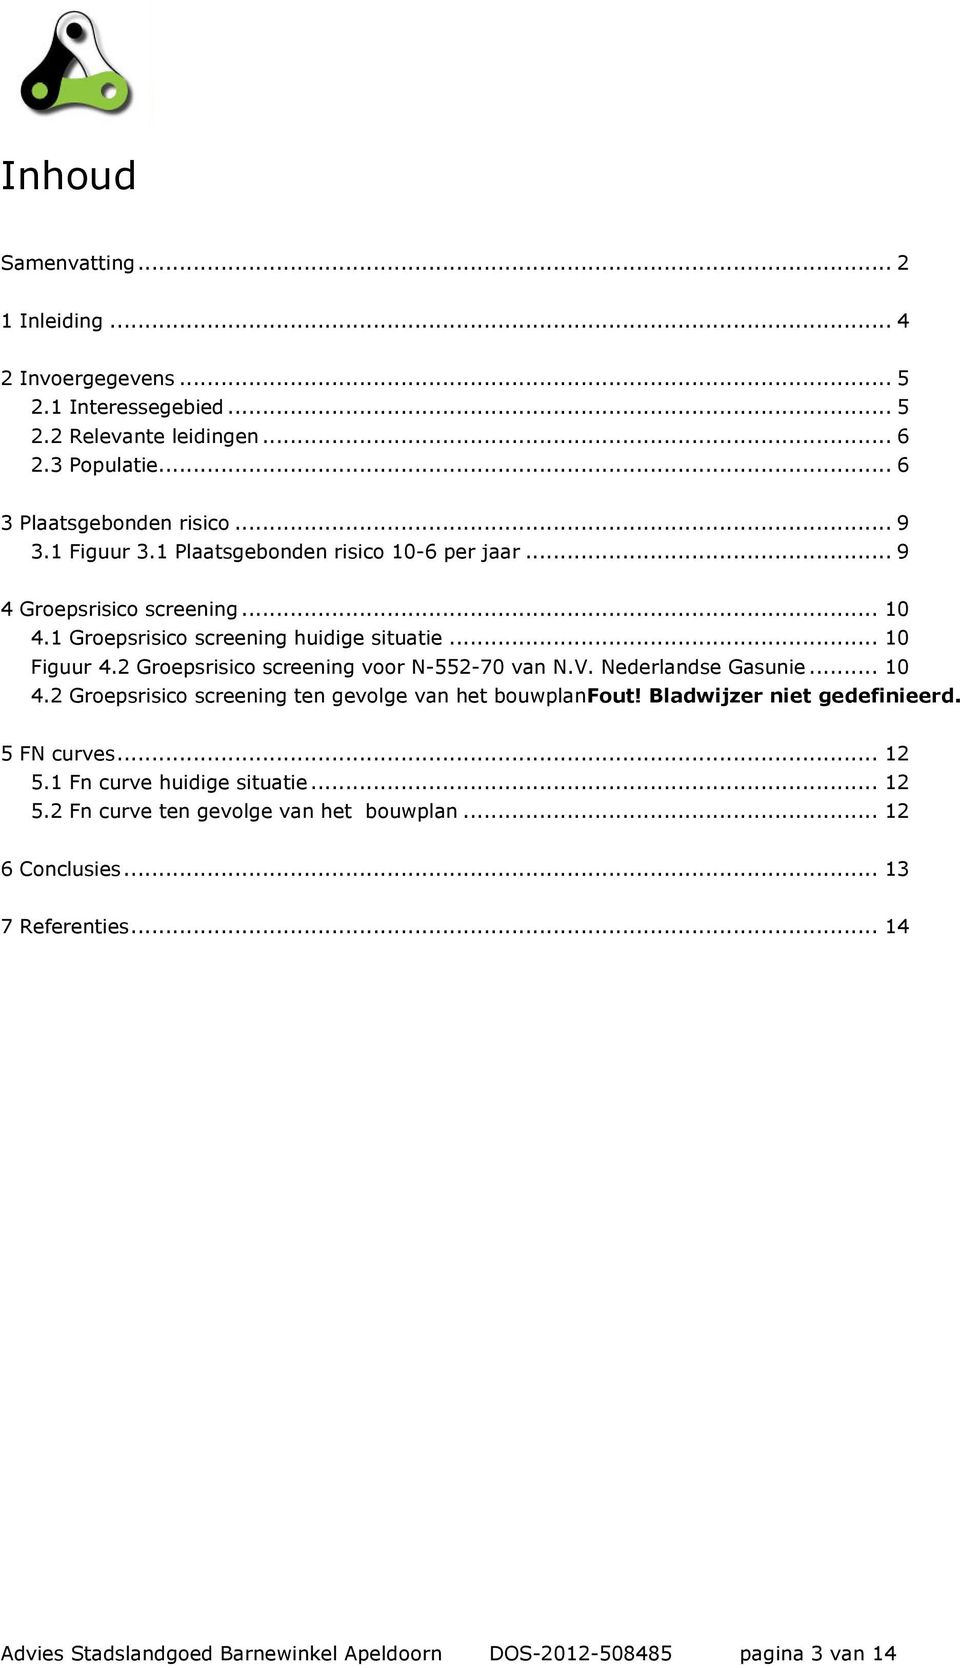 2 Groepsrisico screening voor N-552-70 van N.V. Nederlandse Gasunie... 10 4.2 Groepsrisico screening ten gevolge van het bouwplanfout! Bladwijzer niet gedefinieerd.